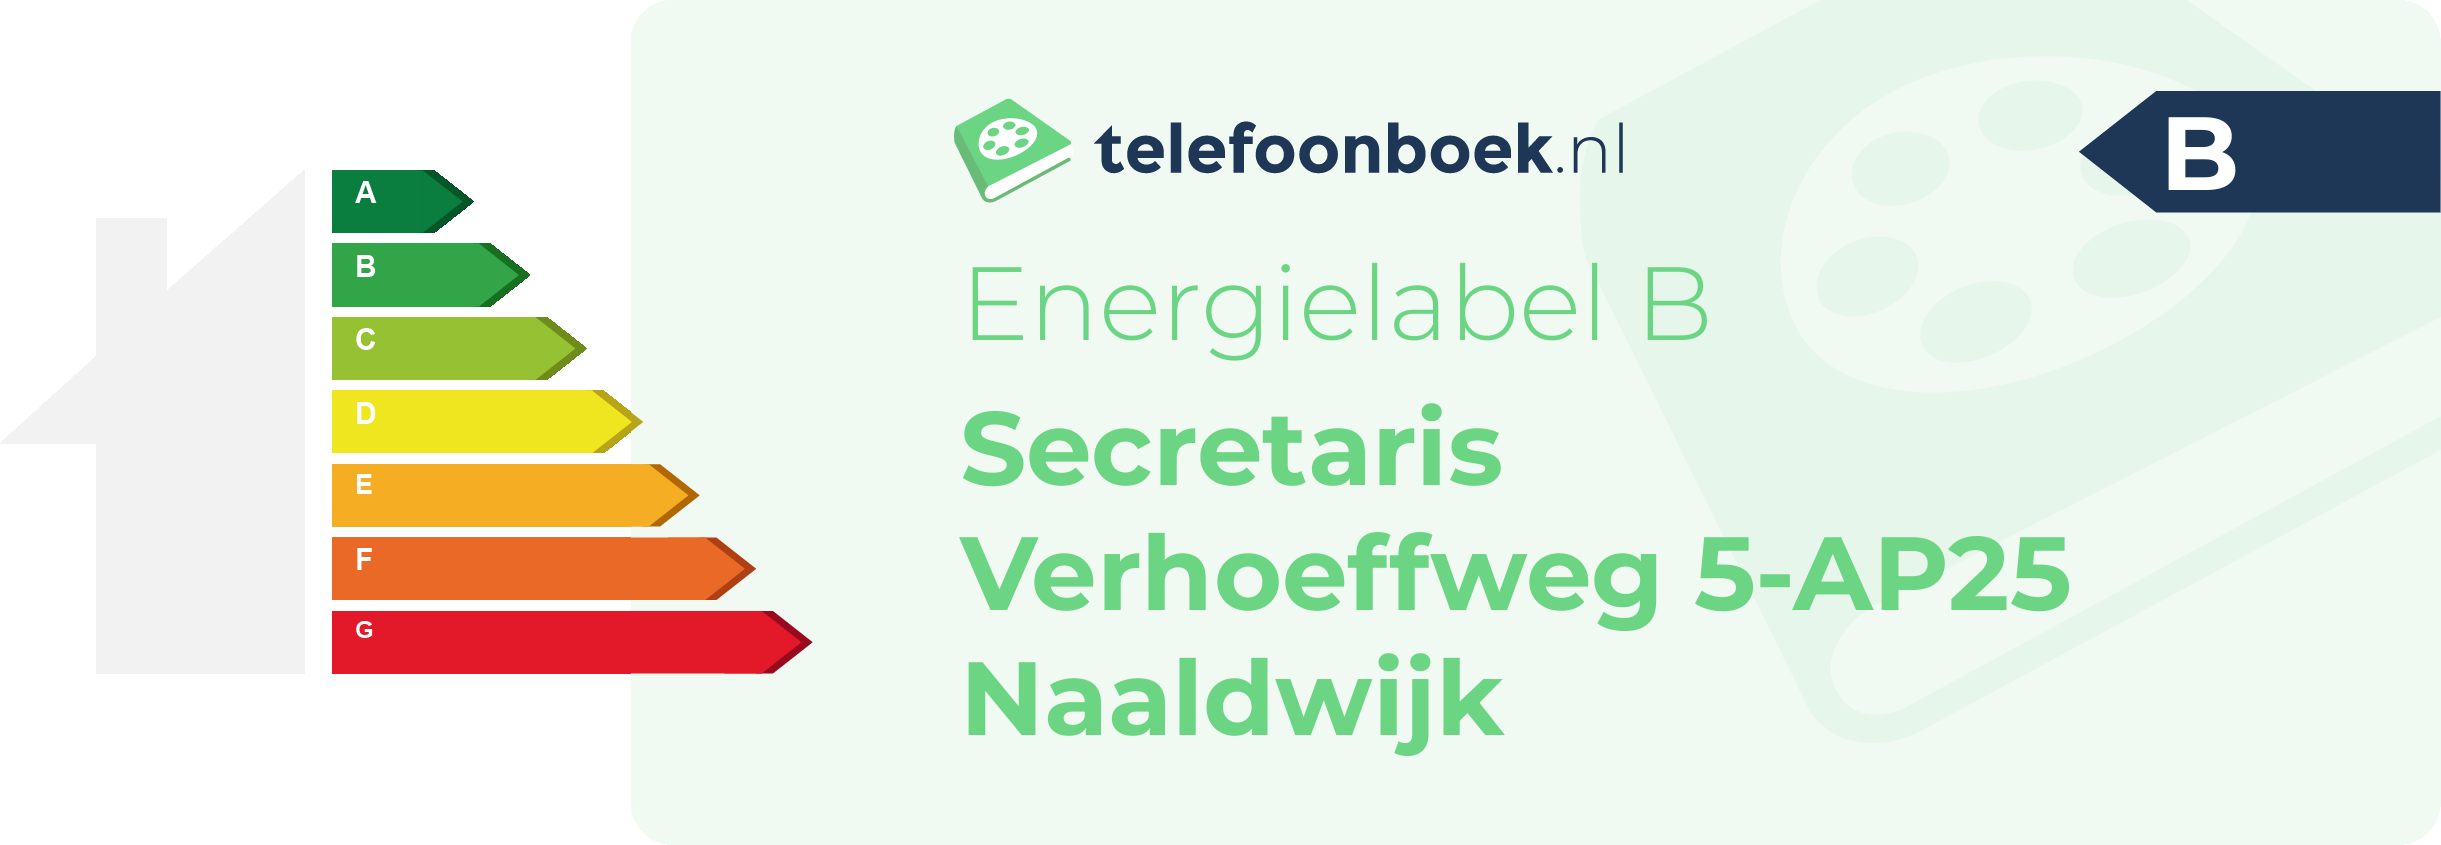 Energielabel Secretaris Verhoeffweg 5-AP25 Naaldwijk